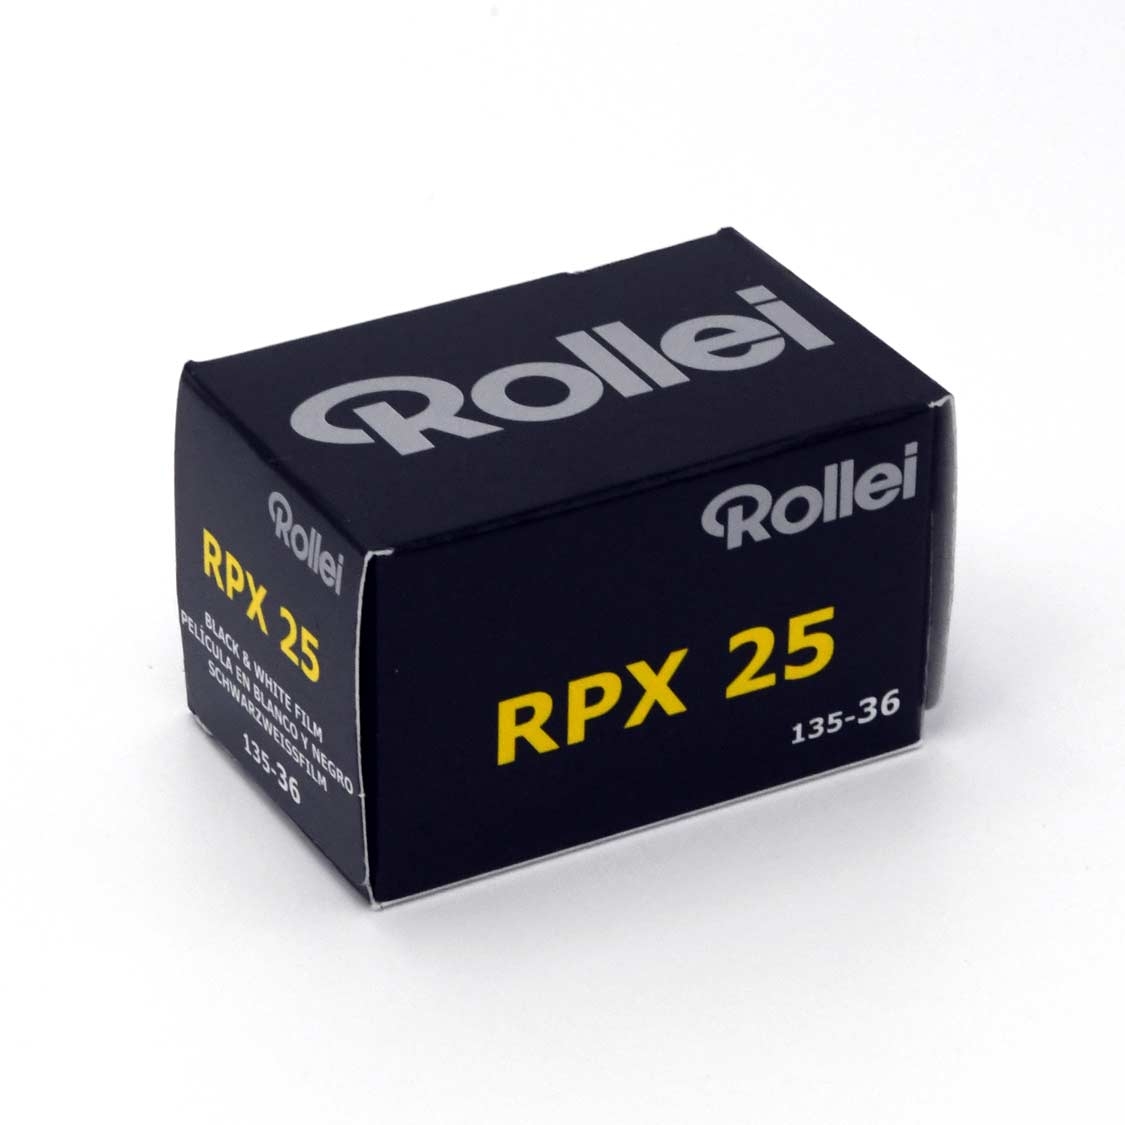 Rollei RPX 25 35mm Film (36 exposure)